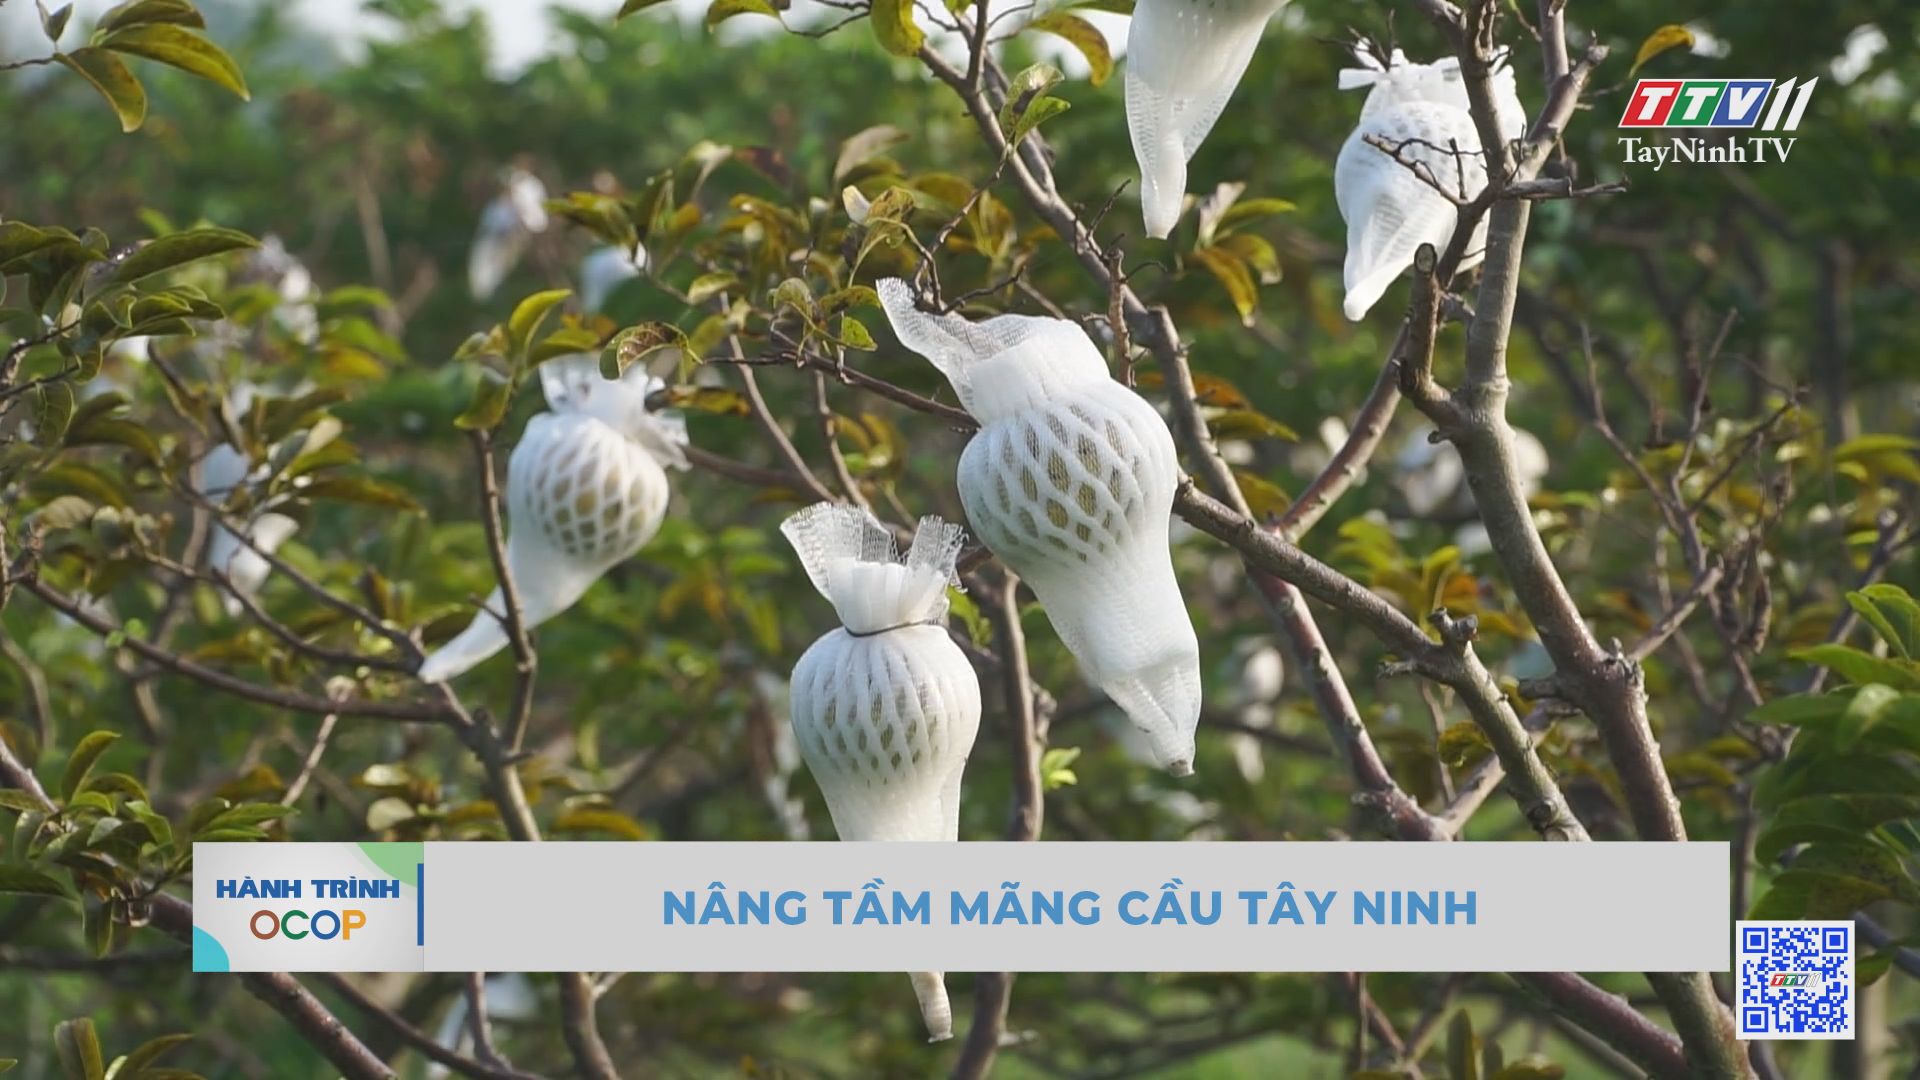 Nâng tầm mãng cầu Tây Ninh | Hành trình OCOP | TayNinhTV